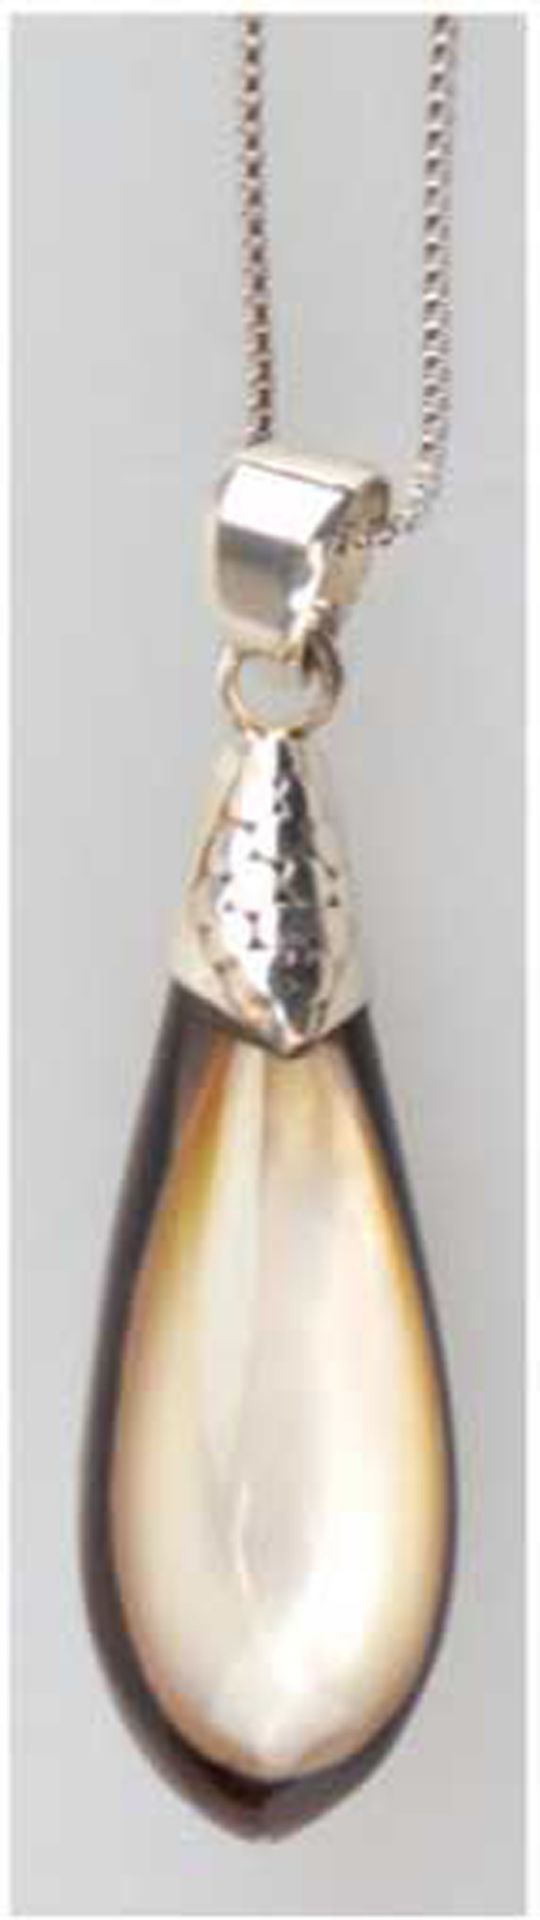 Kette und Anhänger aus zweifarbigen, tropfenförmigen  Perlmutt, 925er Silber, Kettenlänge 46,5 cm, 